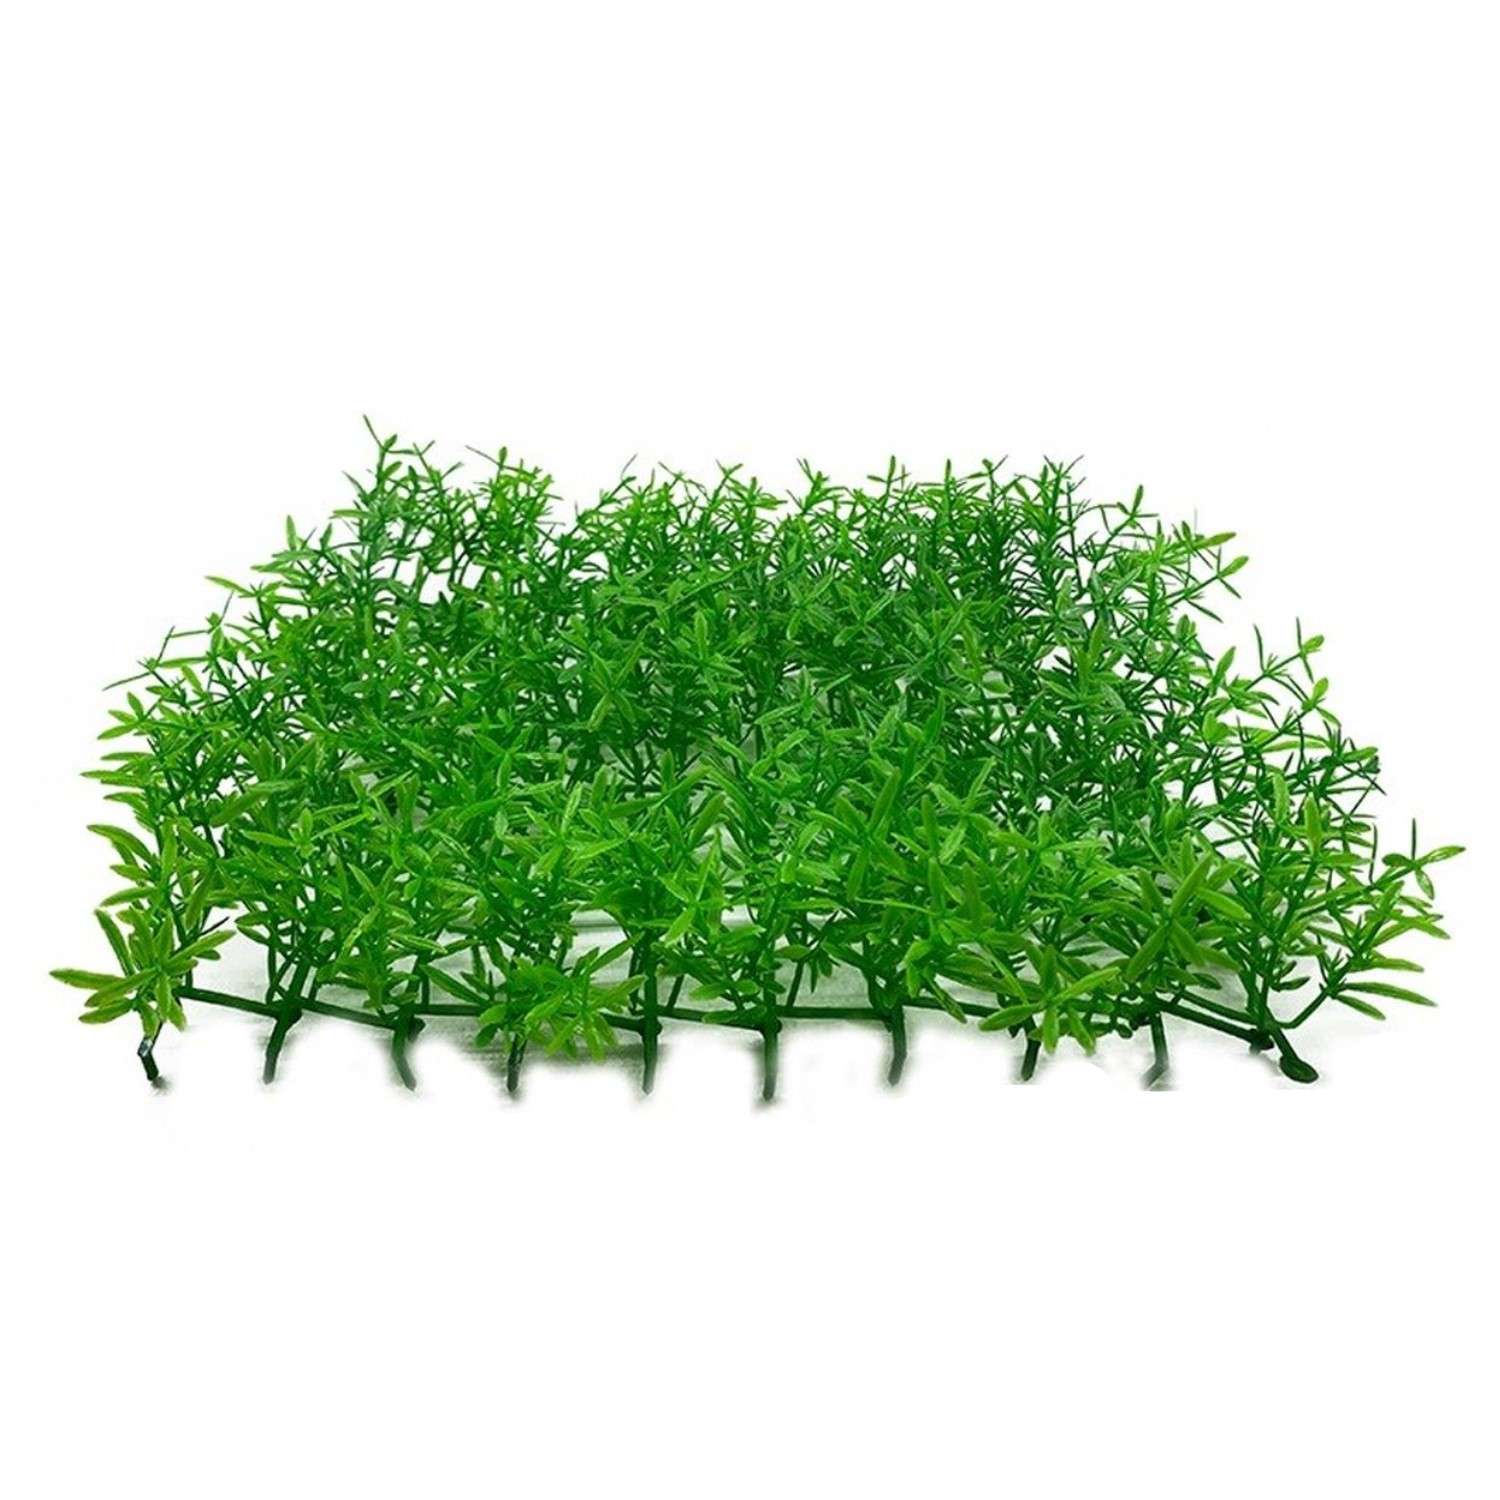 Искусственное растение Rabizy для аквагрунта в виде коврика 25х25х5 см - фото 1